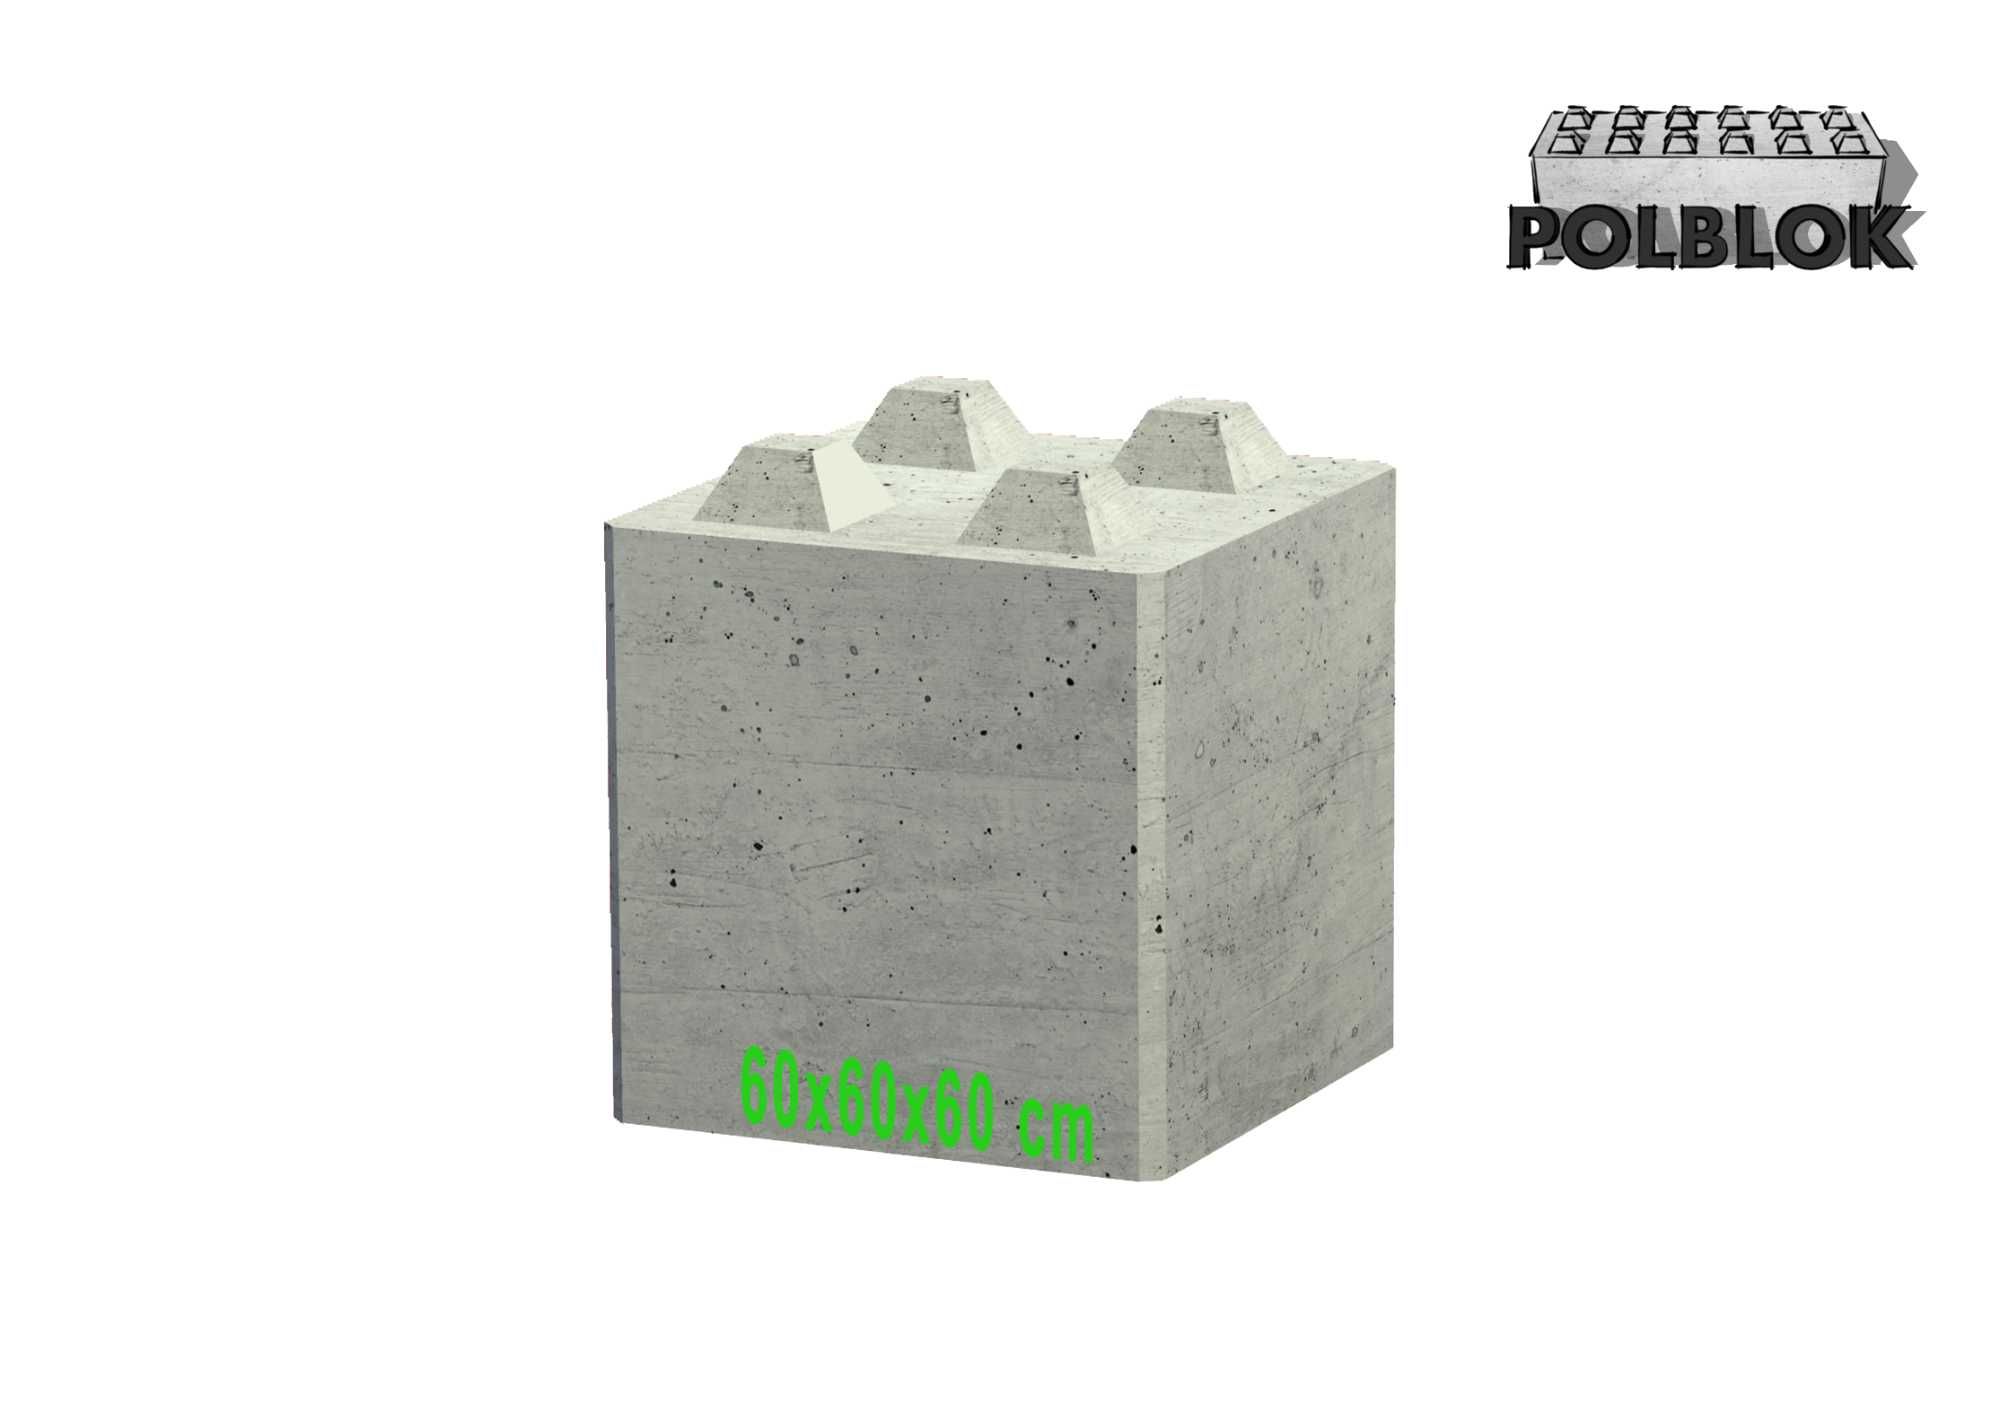 Bloki betonowe 180x60, ppoż mury oporowe ściany ognioodporne REI360